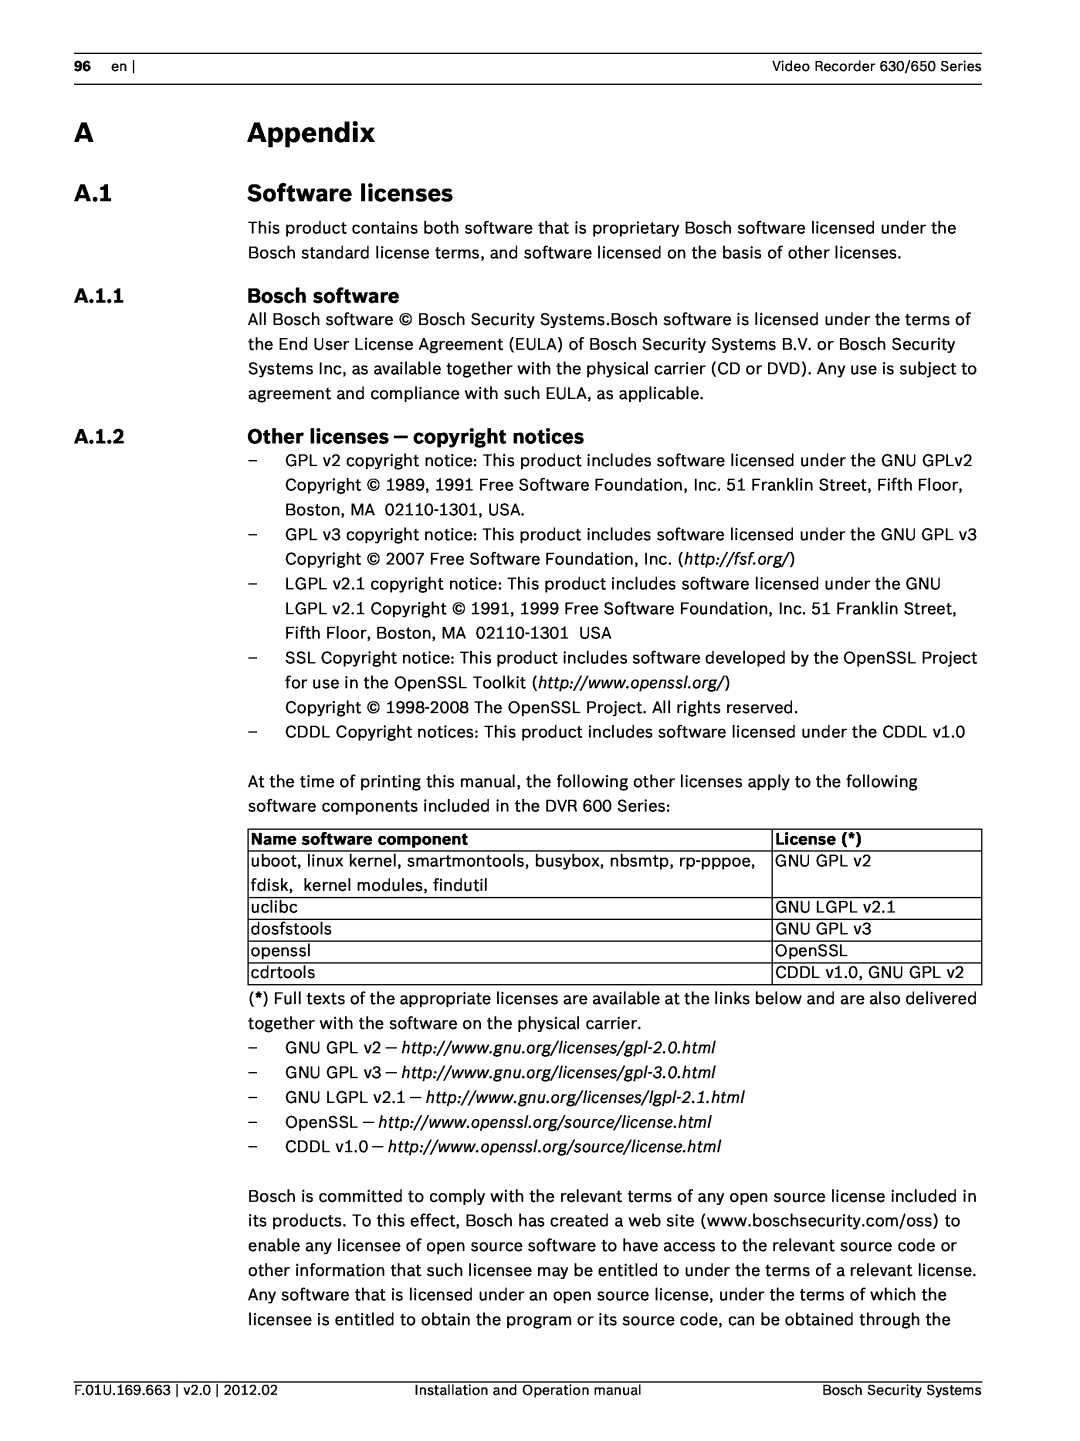 Bosch Appliances 650, 630 Appendix, Software licenses, A.1.1, Bosch software, A.1.2, Other licenses - copyright notices 